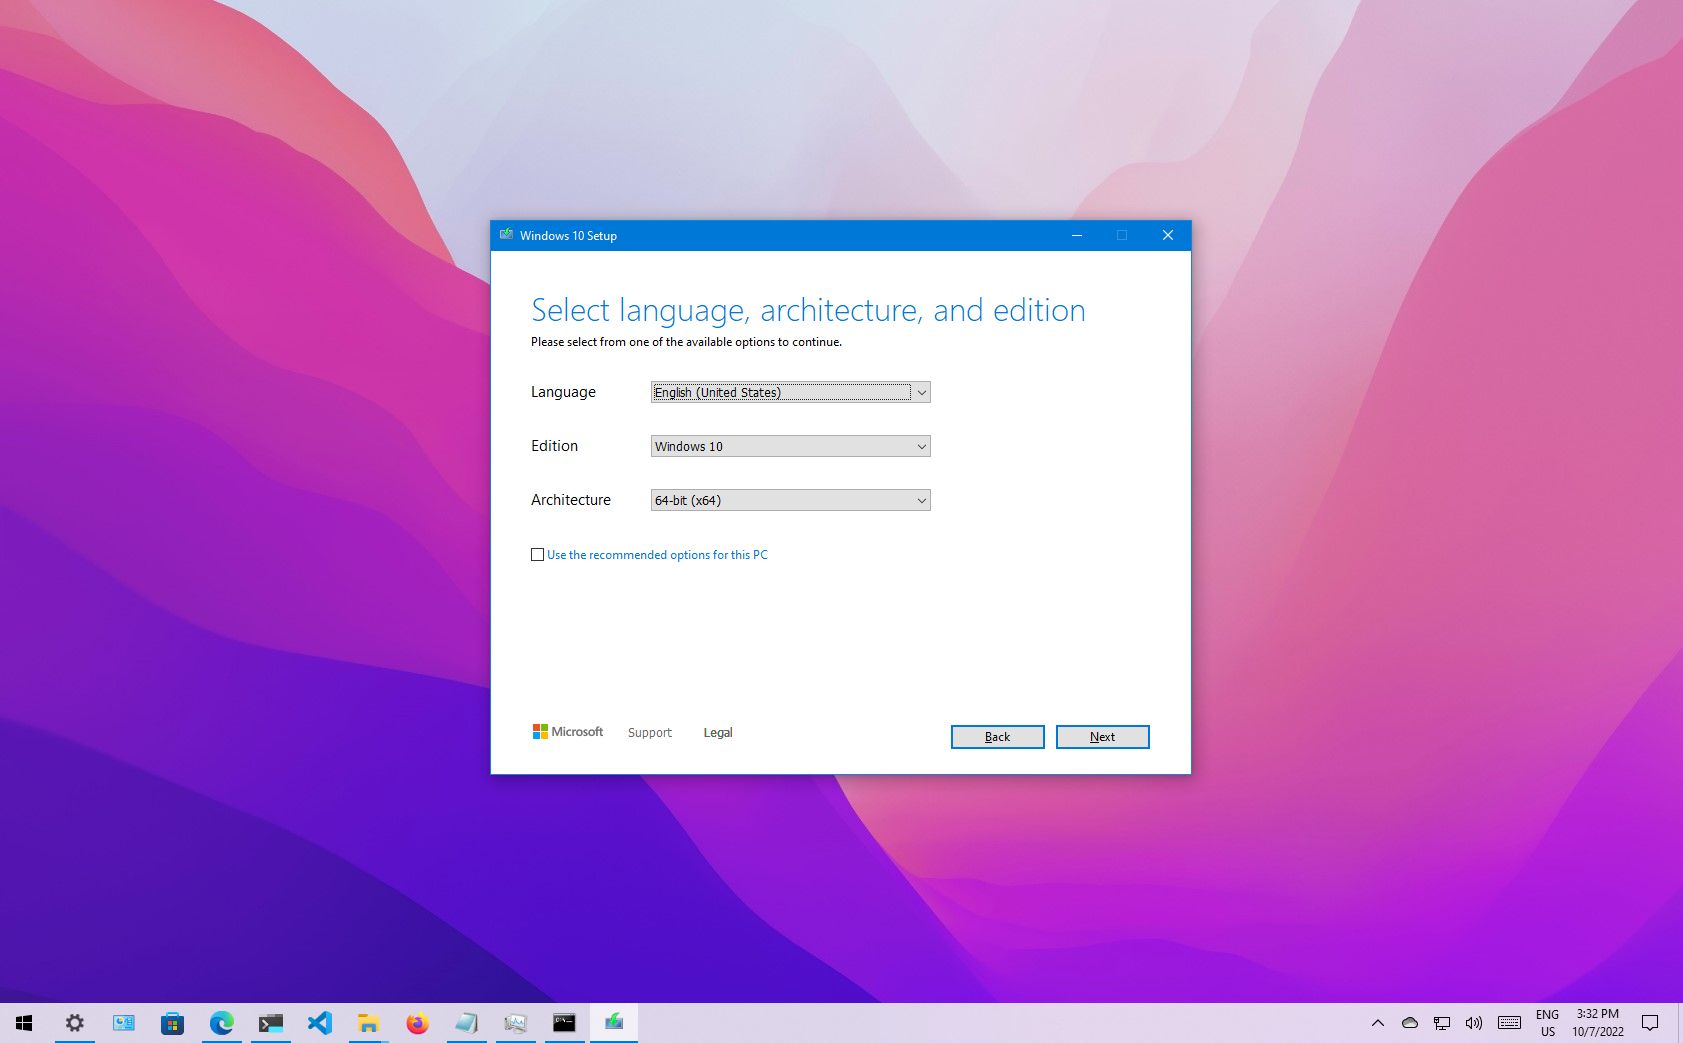 Microsoft Windows 11 Pro 64-Bit USB Flash Drive Full Retail Version In Box